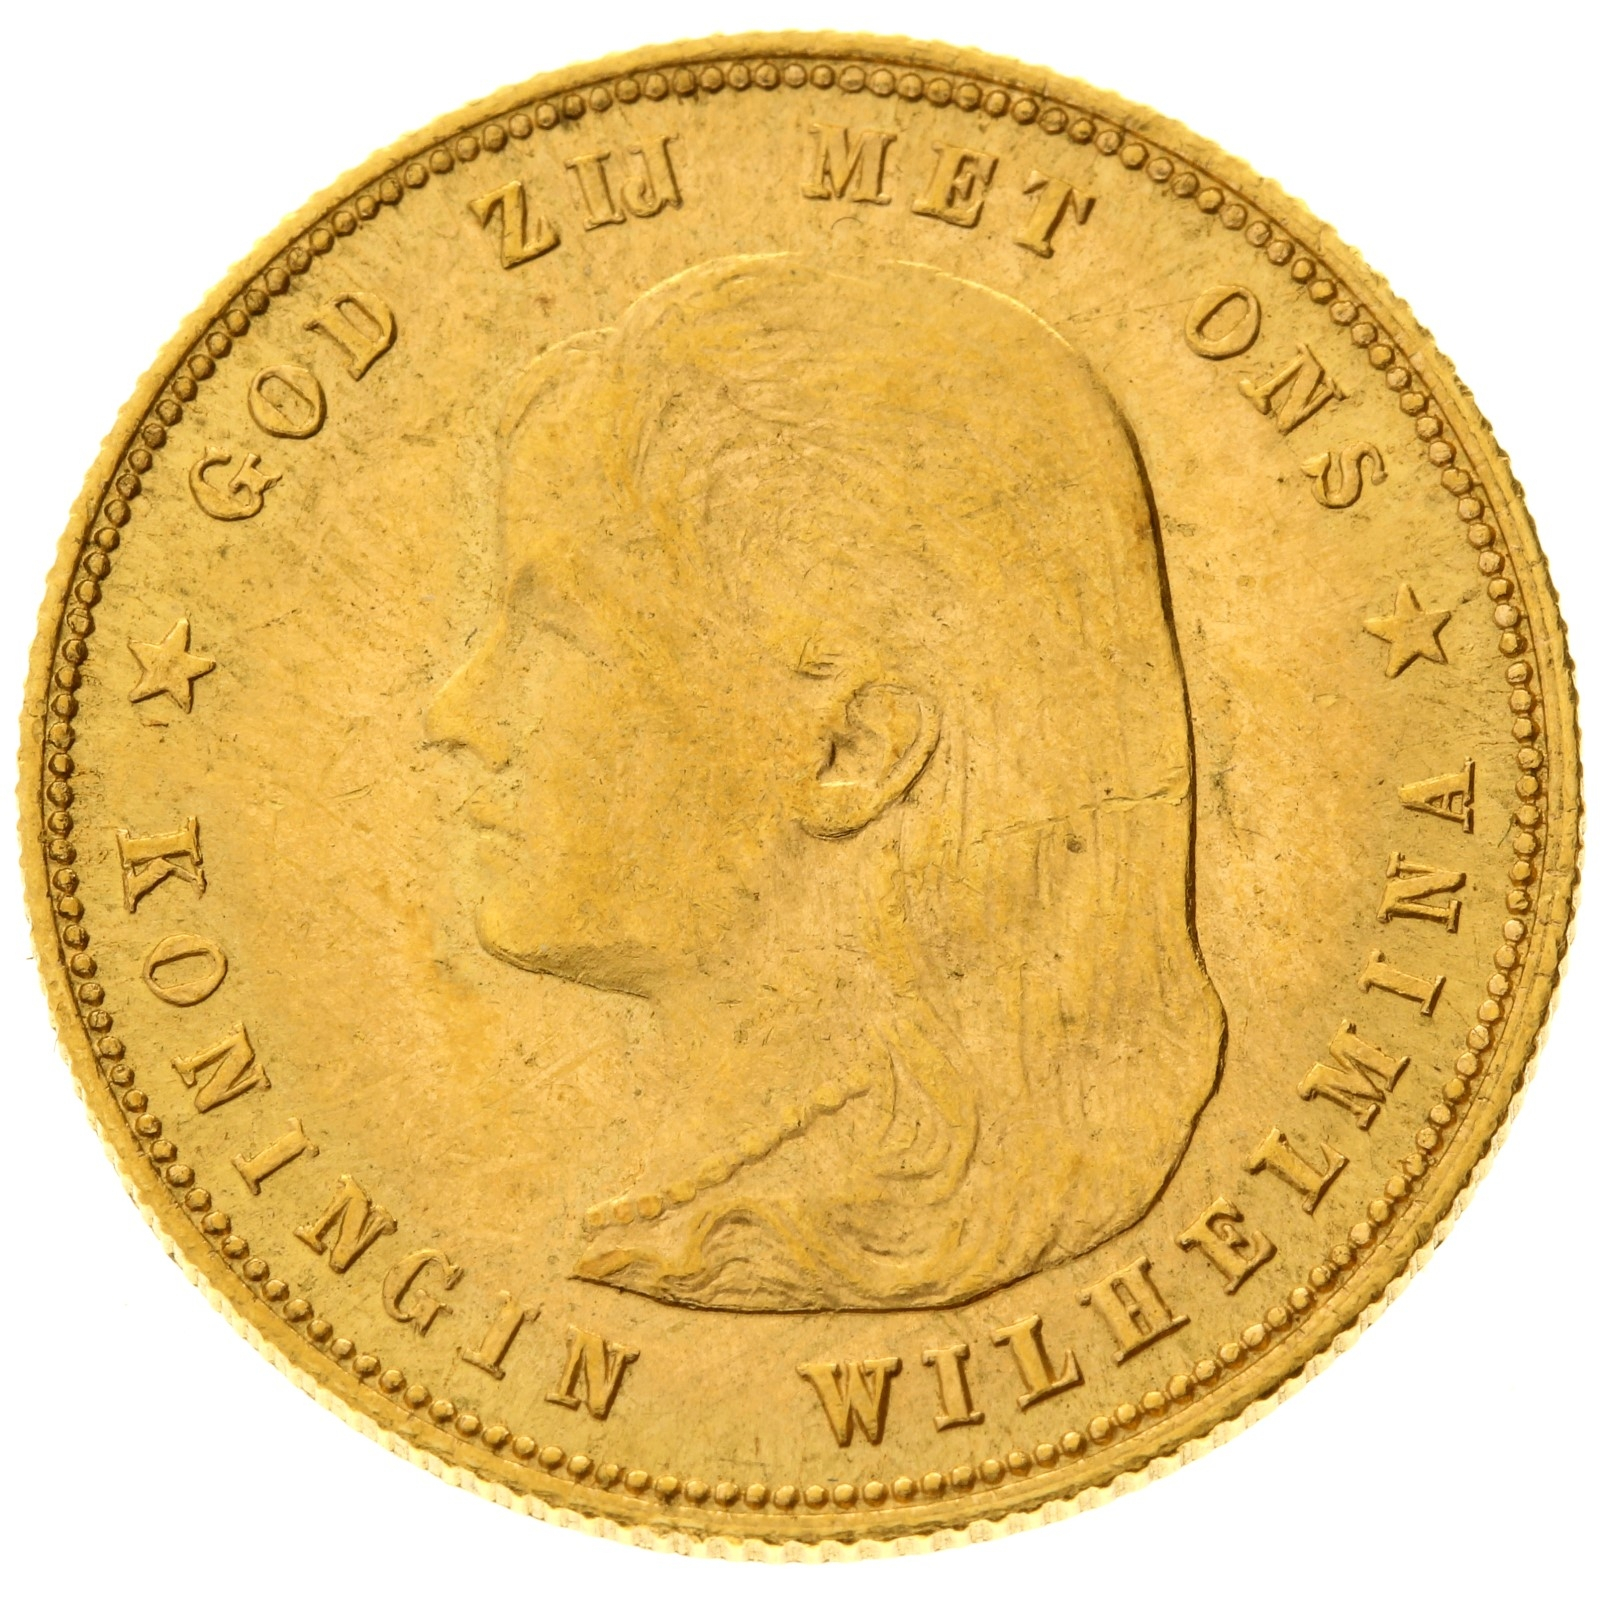 Netherlands - 10 gulden - 1897